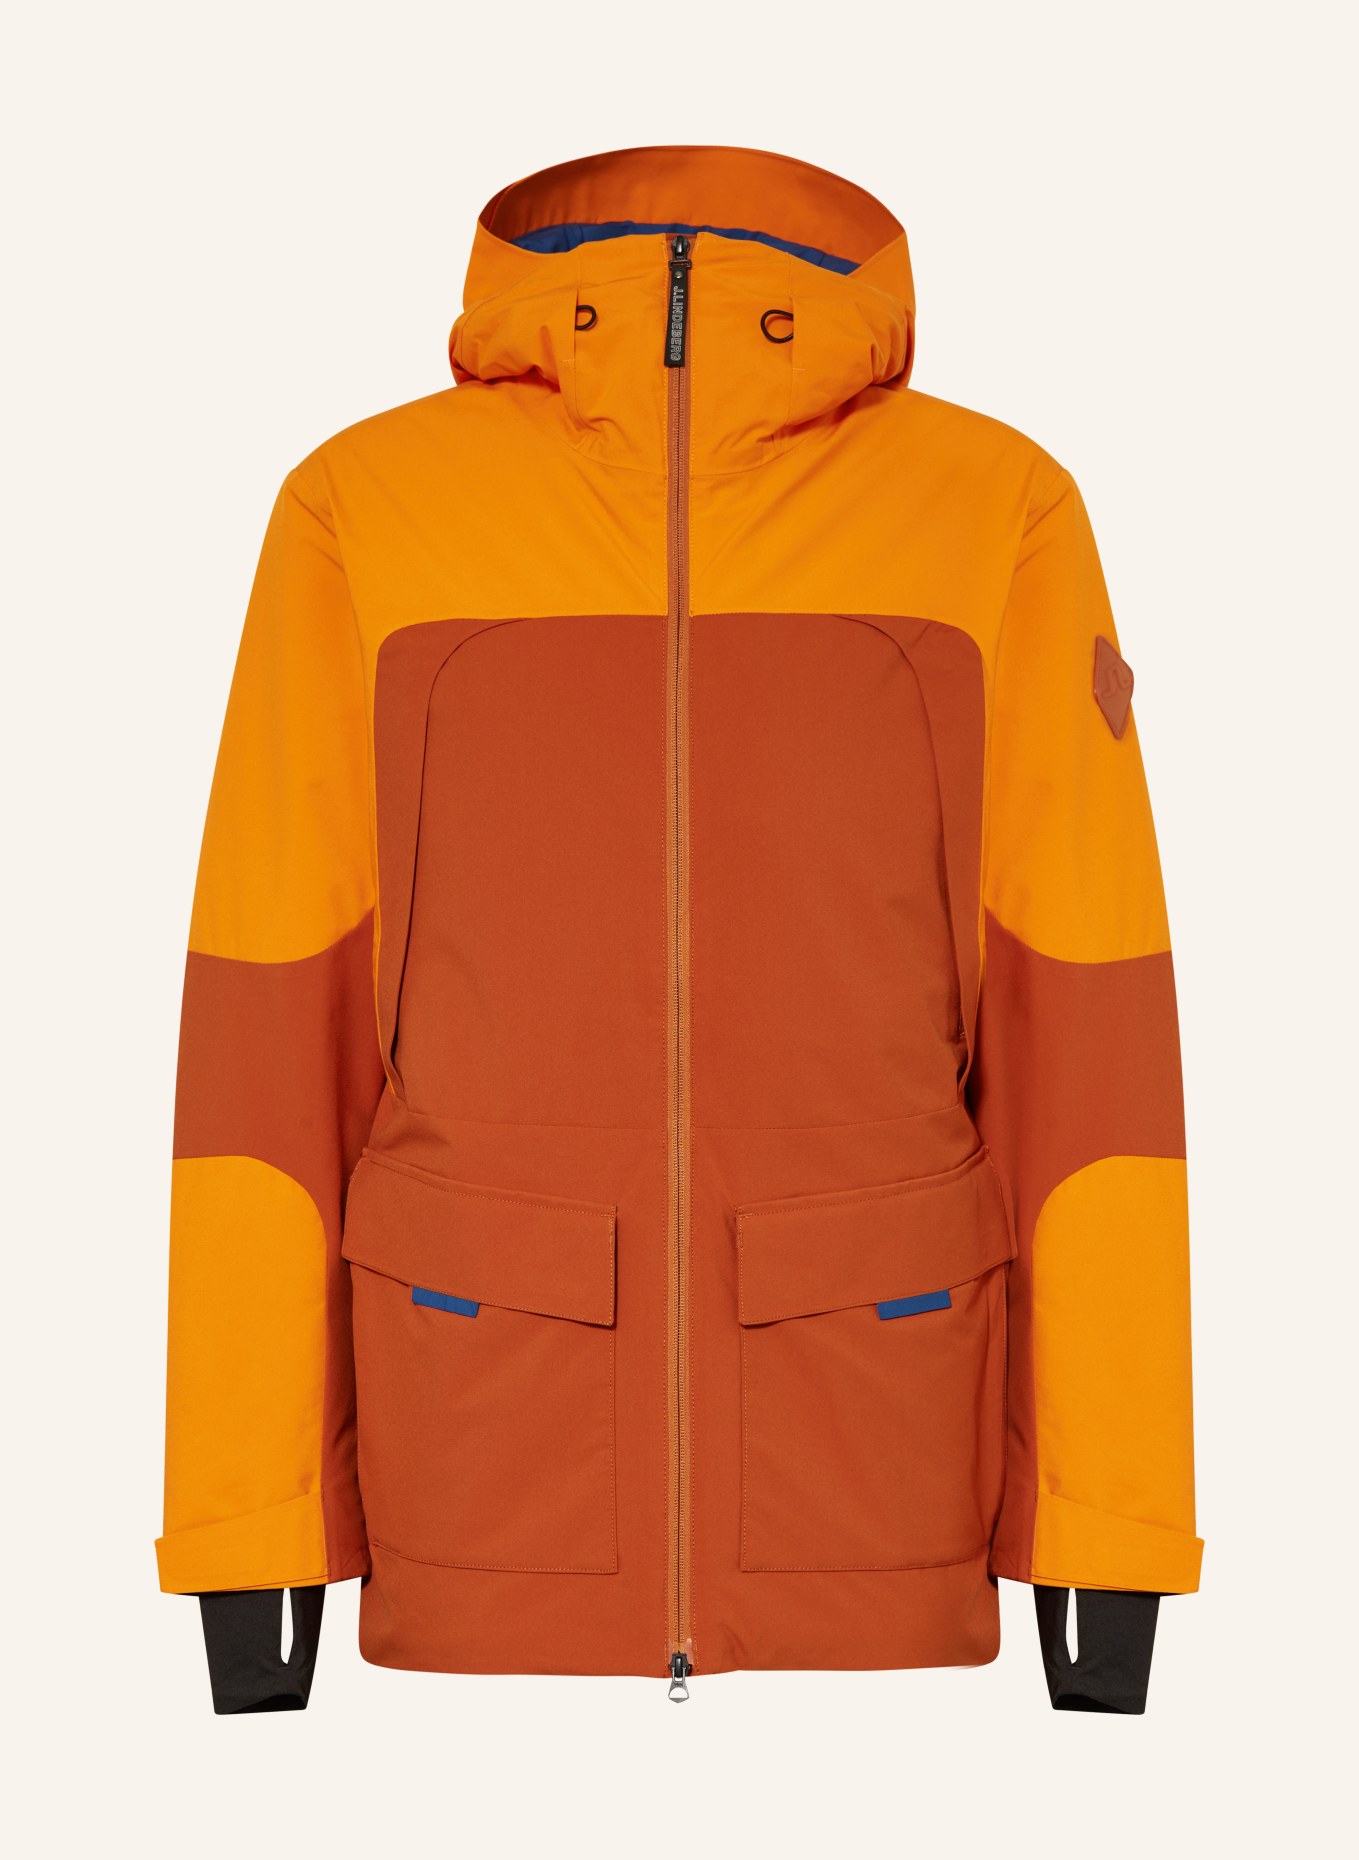 Ski J.LINDEBERG blue in orange/ orange/ jacket dark